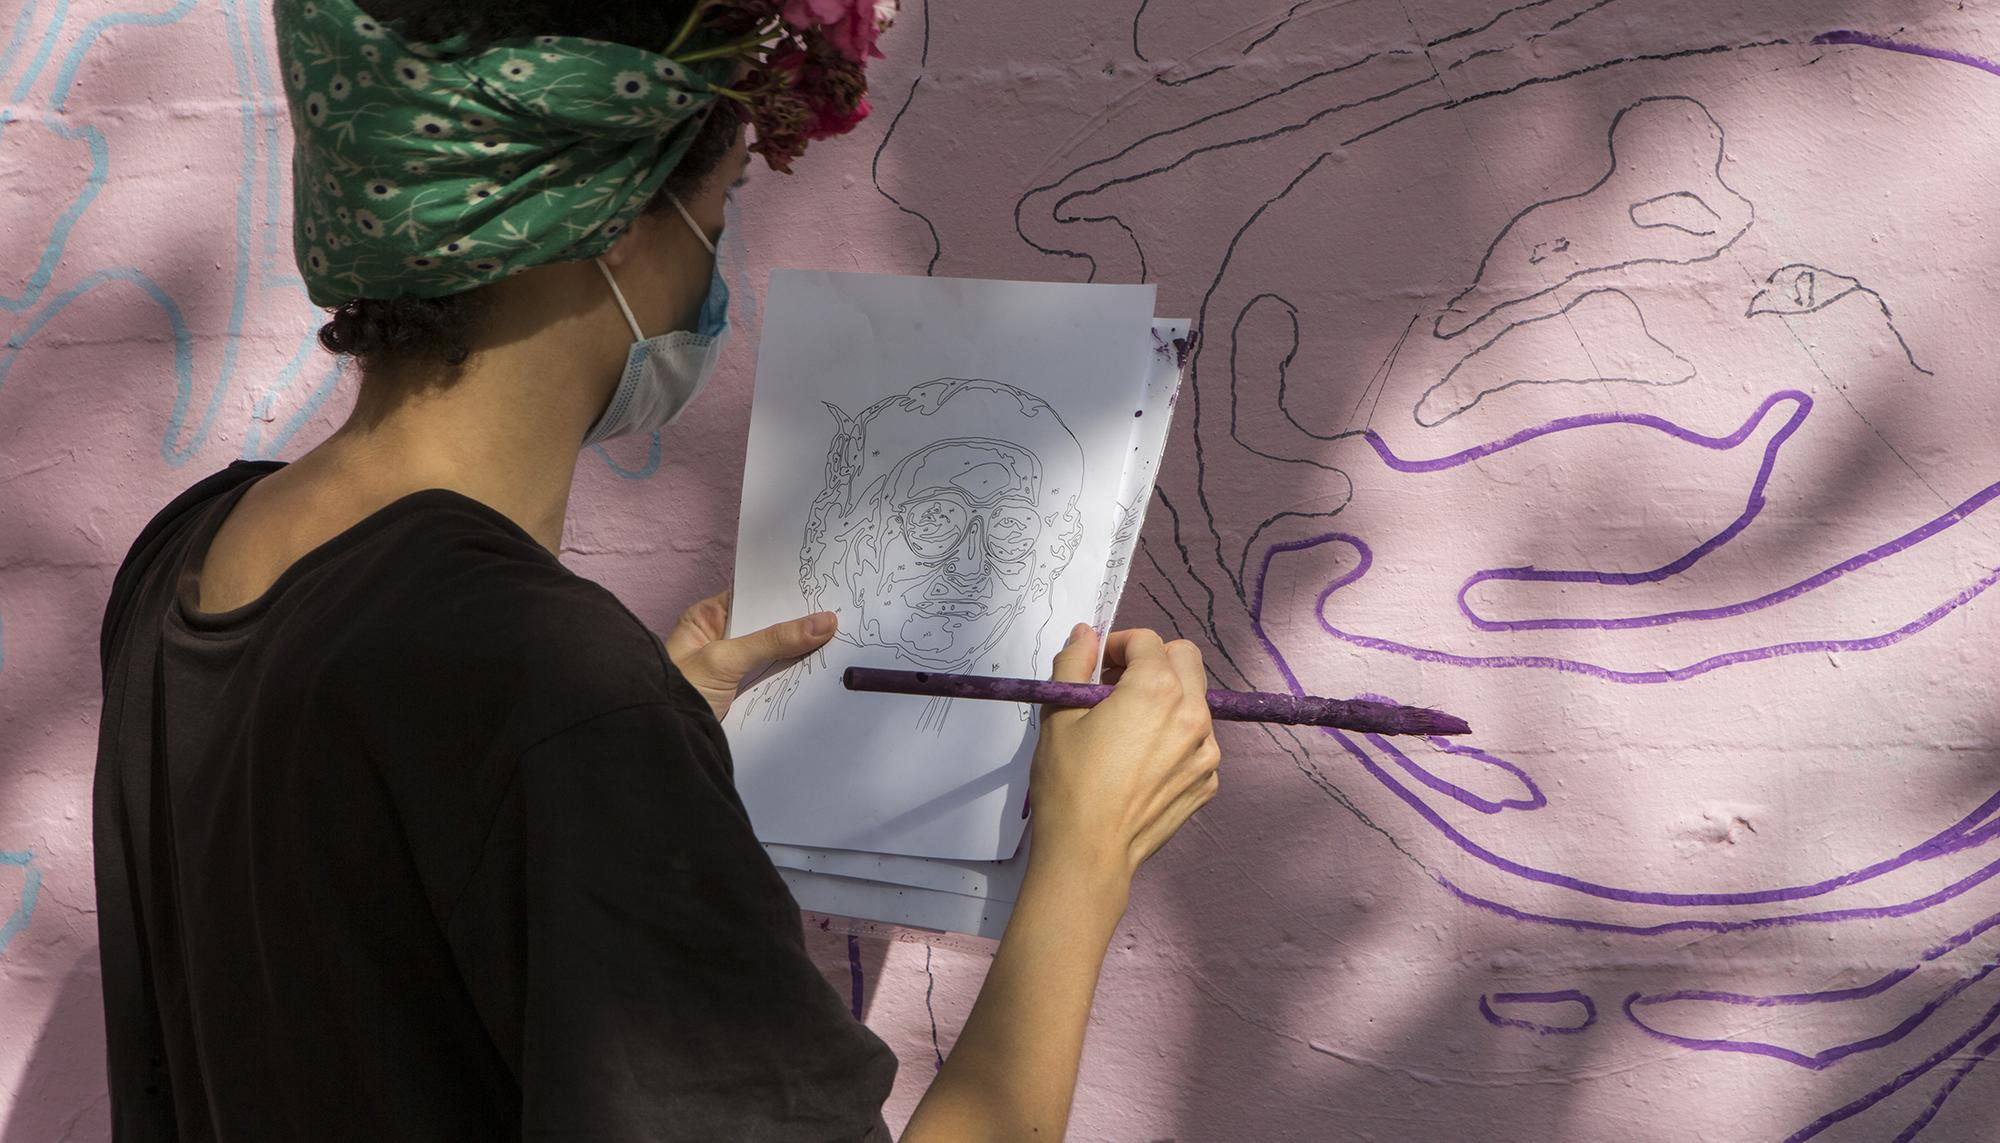 Reconstrucción del mural feminista de La Concepción en Ciudad Lineal, Madrid - 12